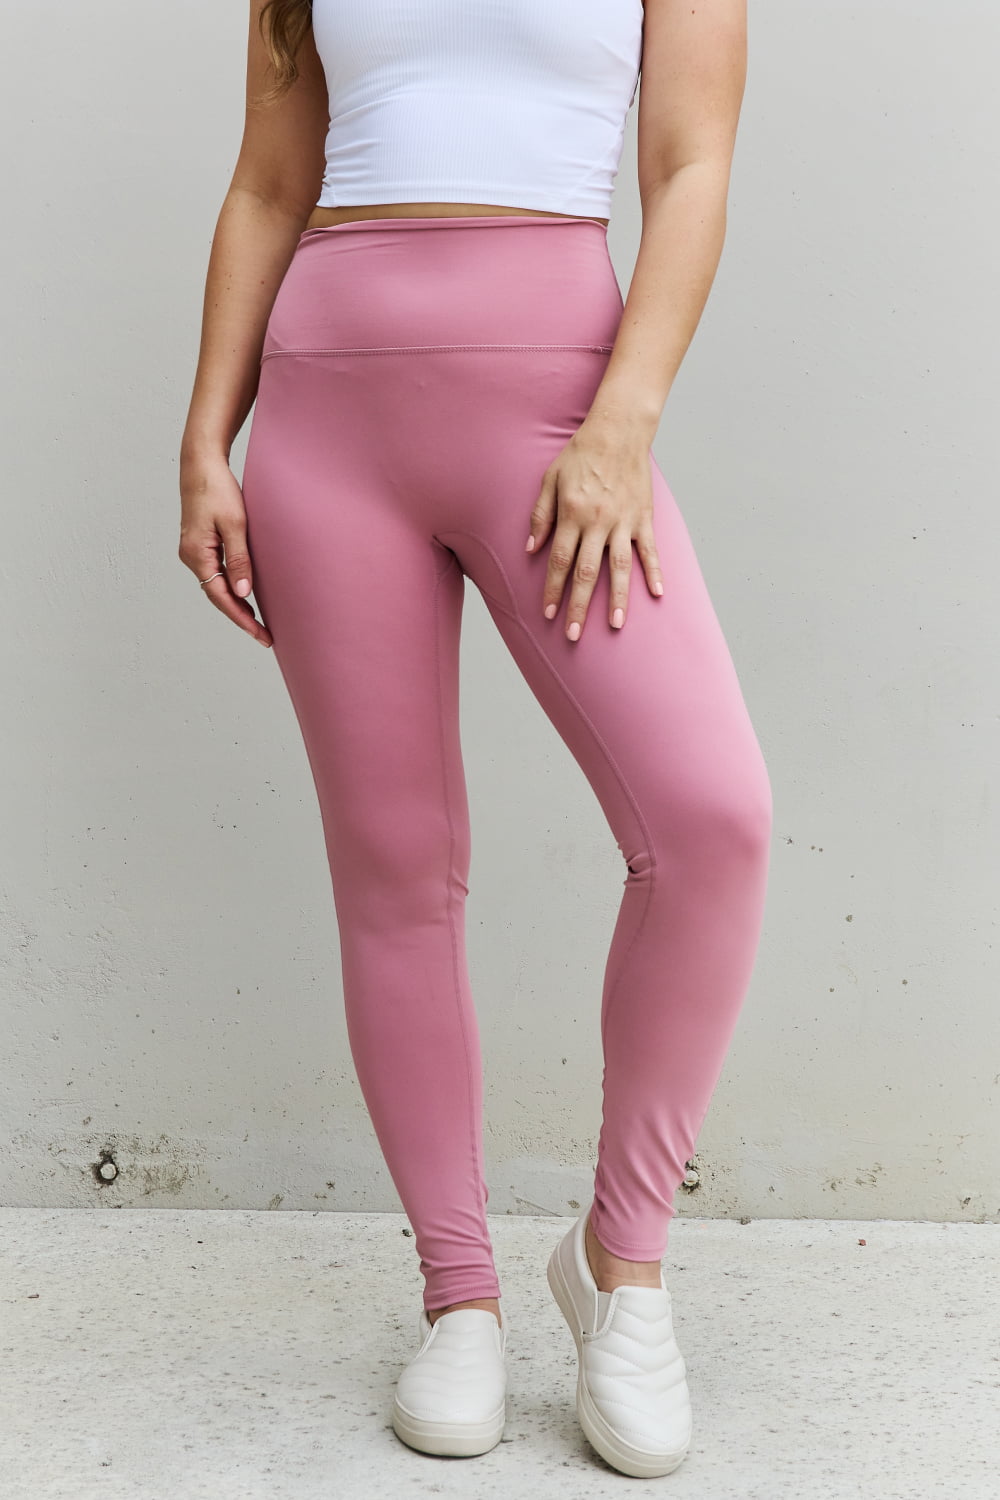 Zenana Fit For You Full Size High Waist Active Leggings in Light Rose Trendsi